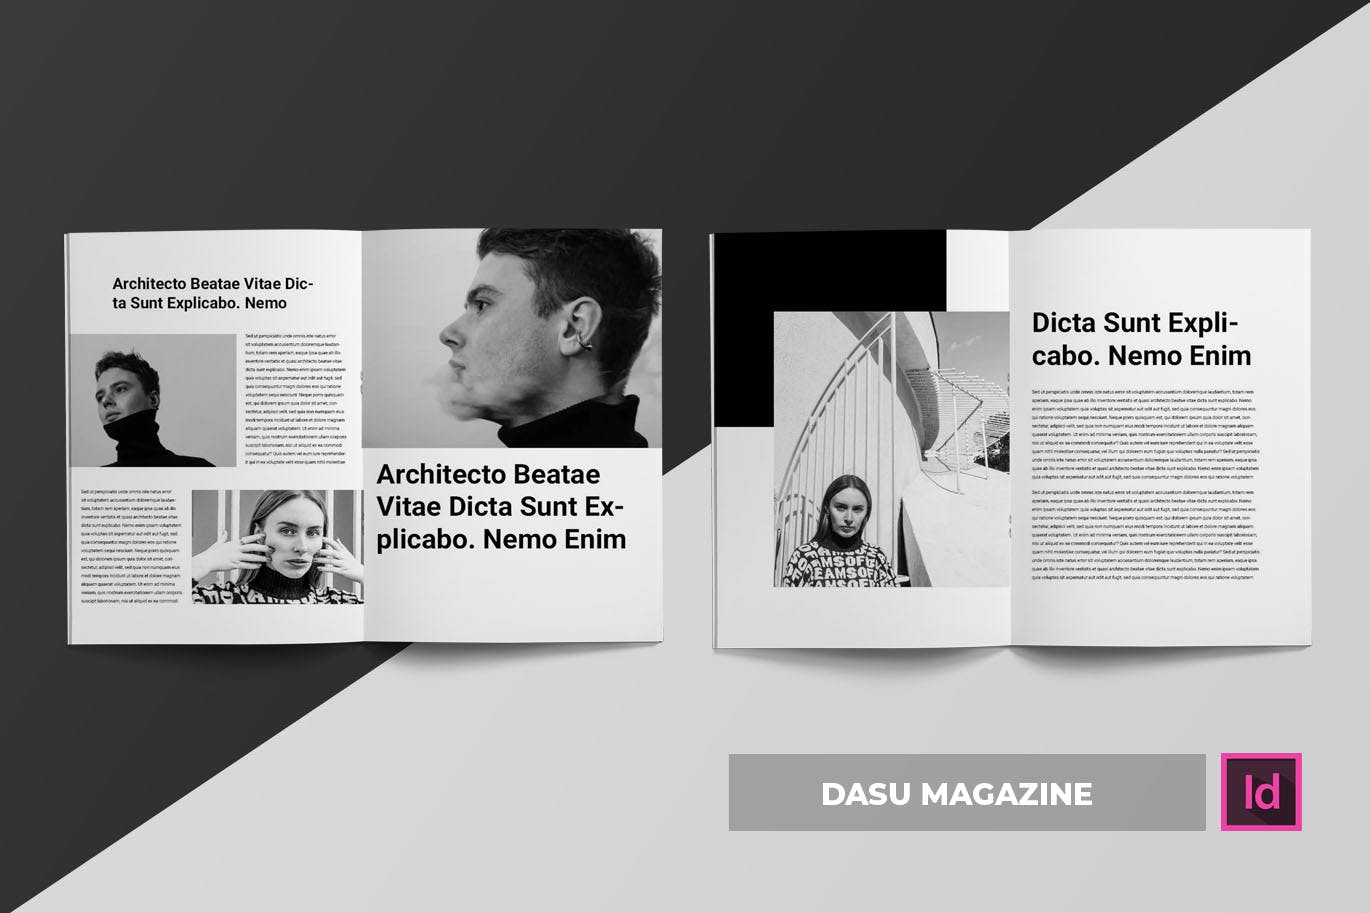 摄影艺术/时装设计主题第一素材精选杂志排版设计模板 Dasu | Magazine Template插图(2)